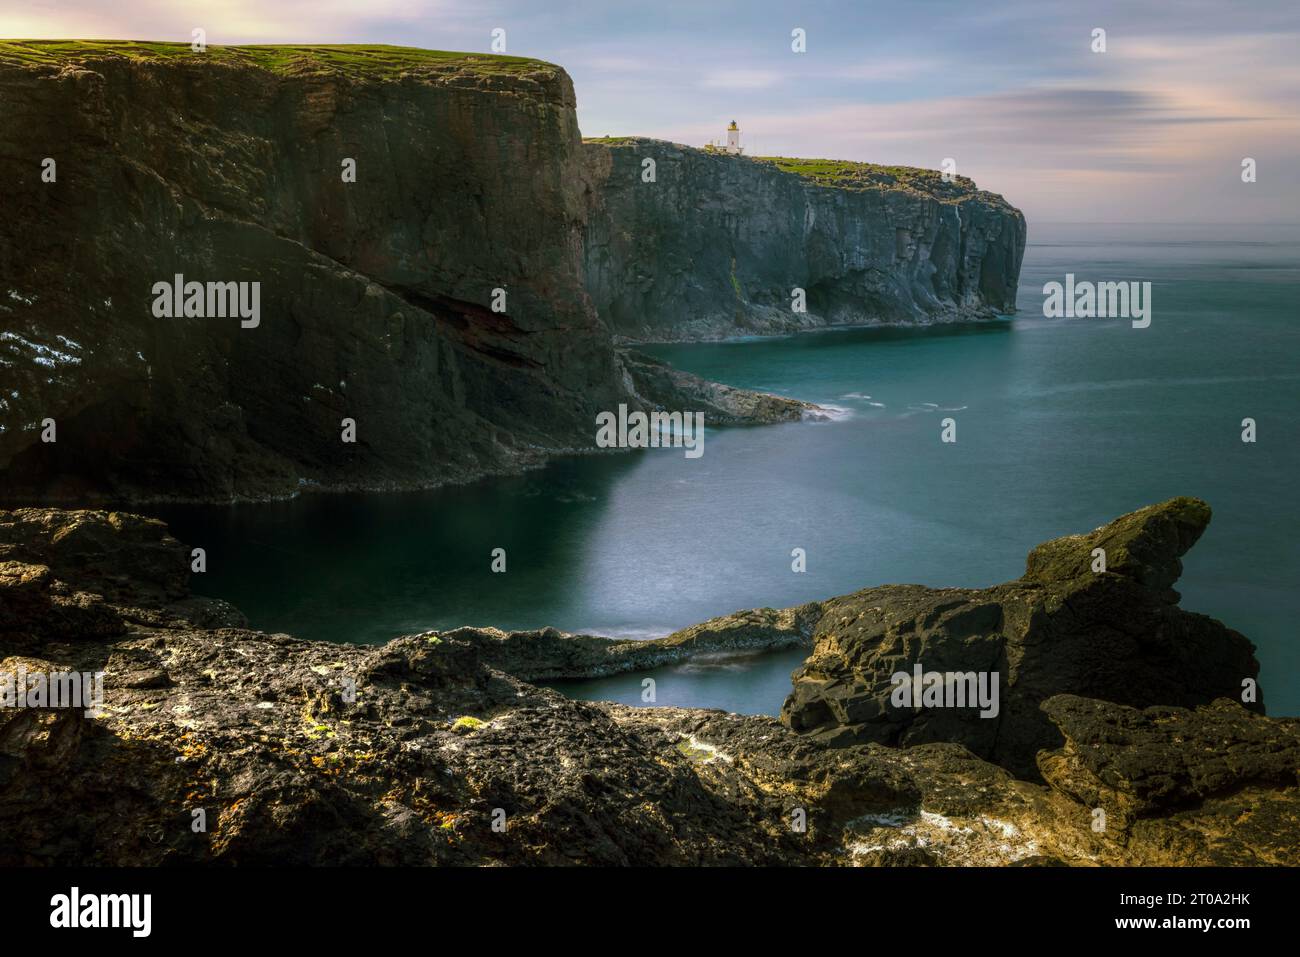 Formazioni rocciose vulcaniche e scogliere a Eshaness, Isole Shetland. Foto Stock